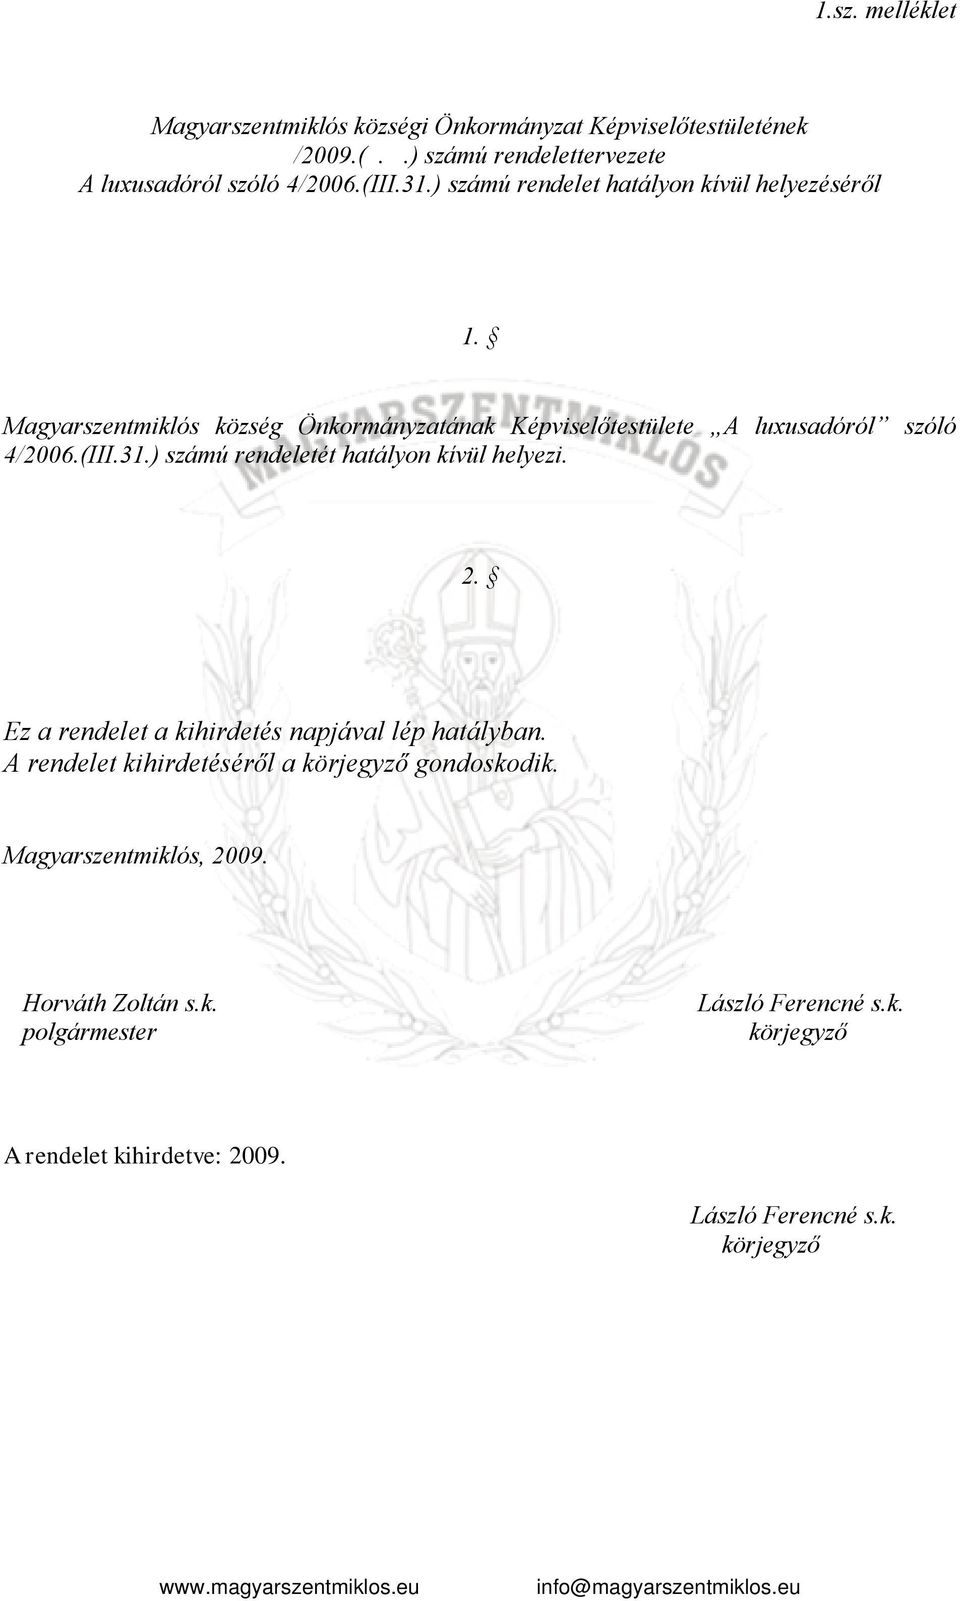 Magyarszentmiklós község Önkormányzatának Képviselőtestülete A luxusadóról szóló 4/2006.(III.31.) számú rendeletét hatályon kívül helyezi.